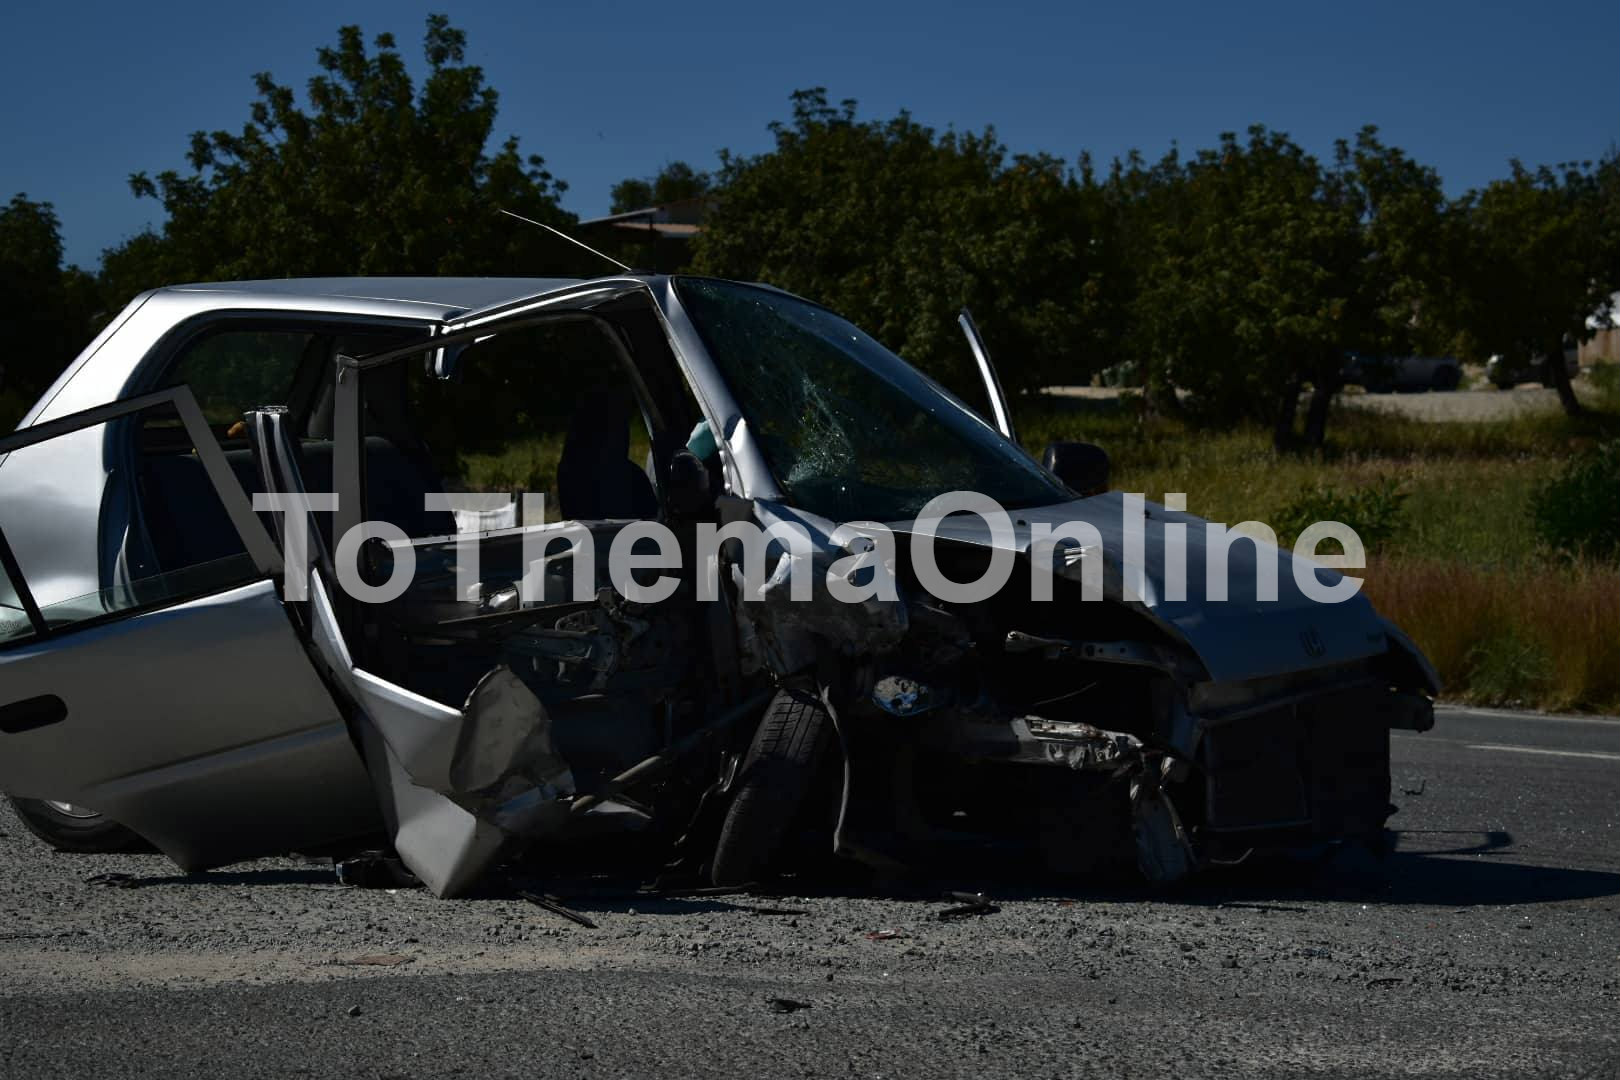 ΤΡΟΧΑΙΟ ΛΕΜΕΣΟΥ: Πήγε να προσπεράσει και συγκρούστηκε μετωπικά με άλλο όχημα- Η κατάσταση των τραυματιών